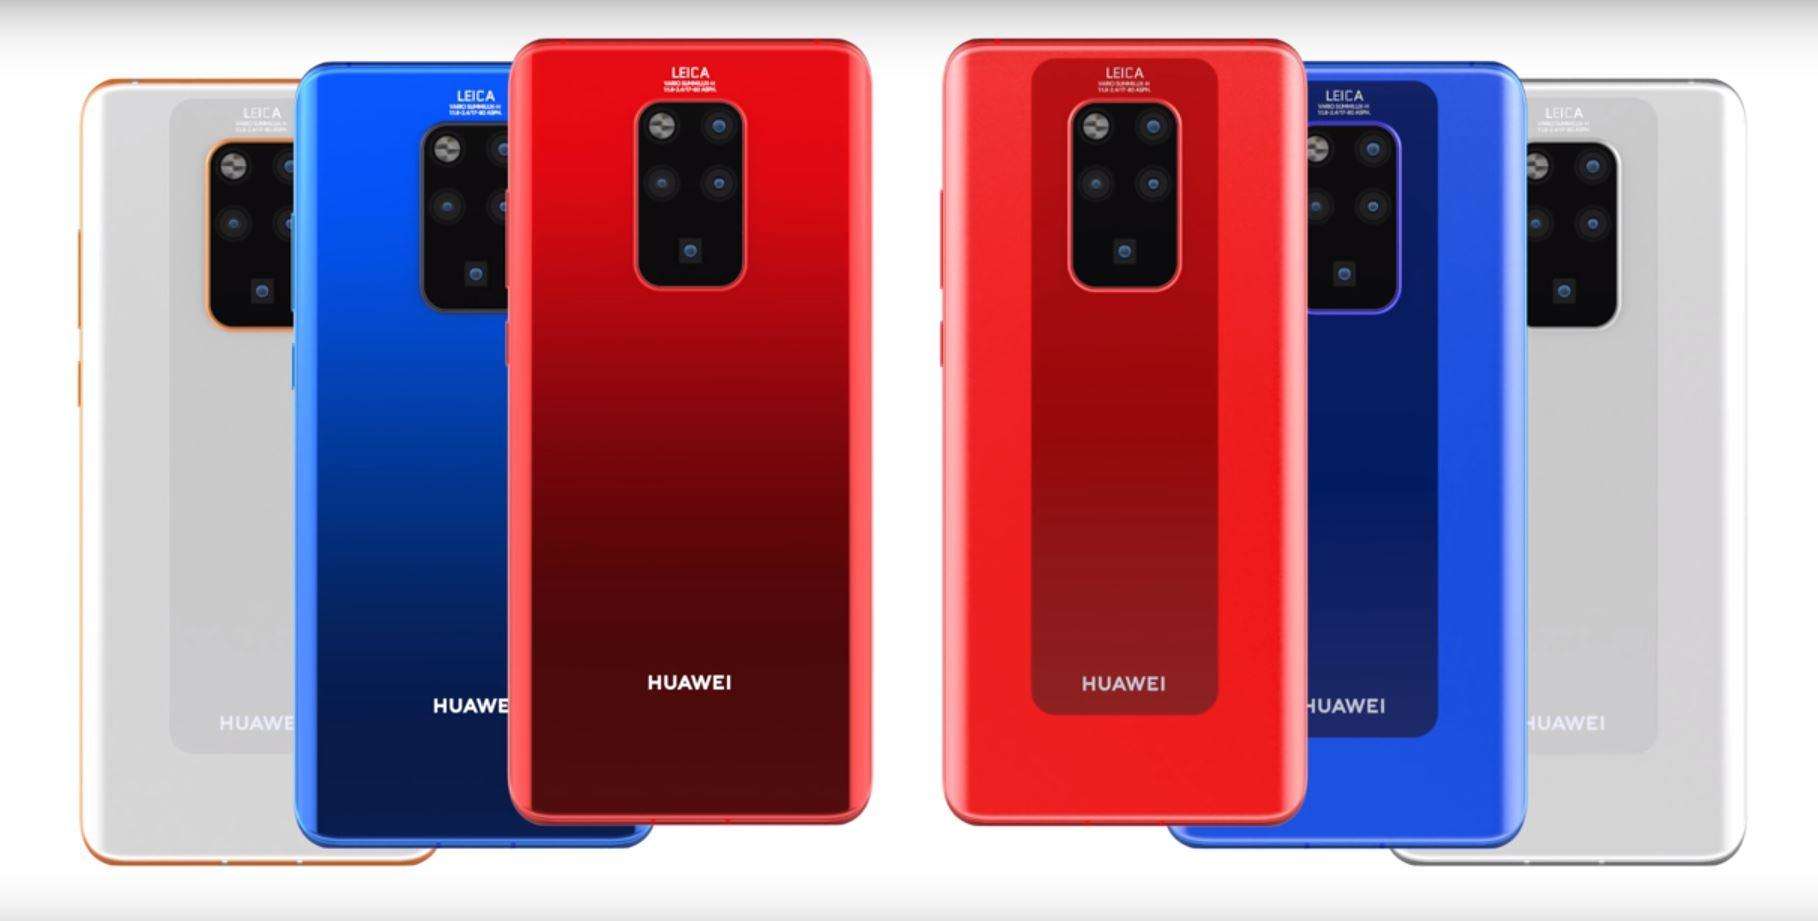 Huawei Mate 30 Pro स्मार्टफोन को जल्द लाँच किया जा सकता है, जानिये